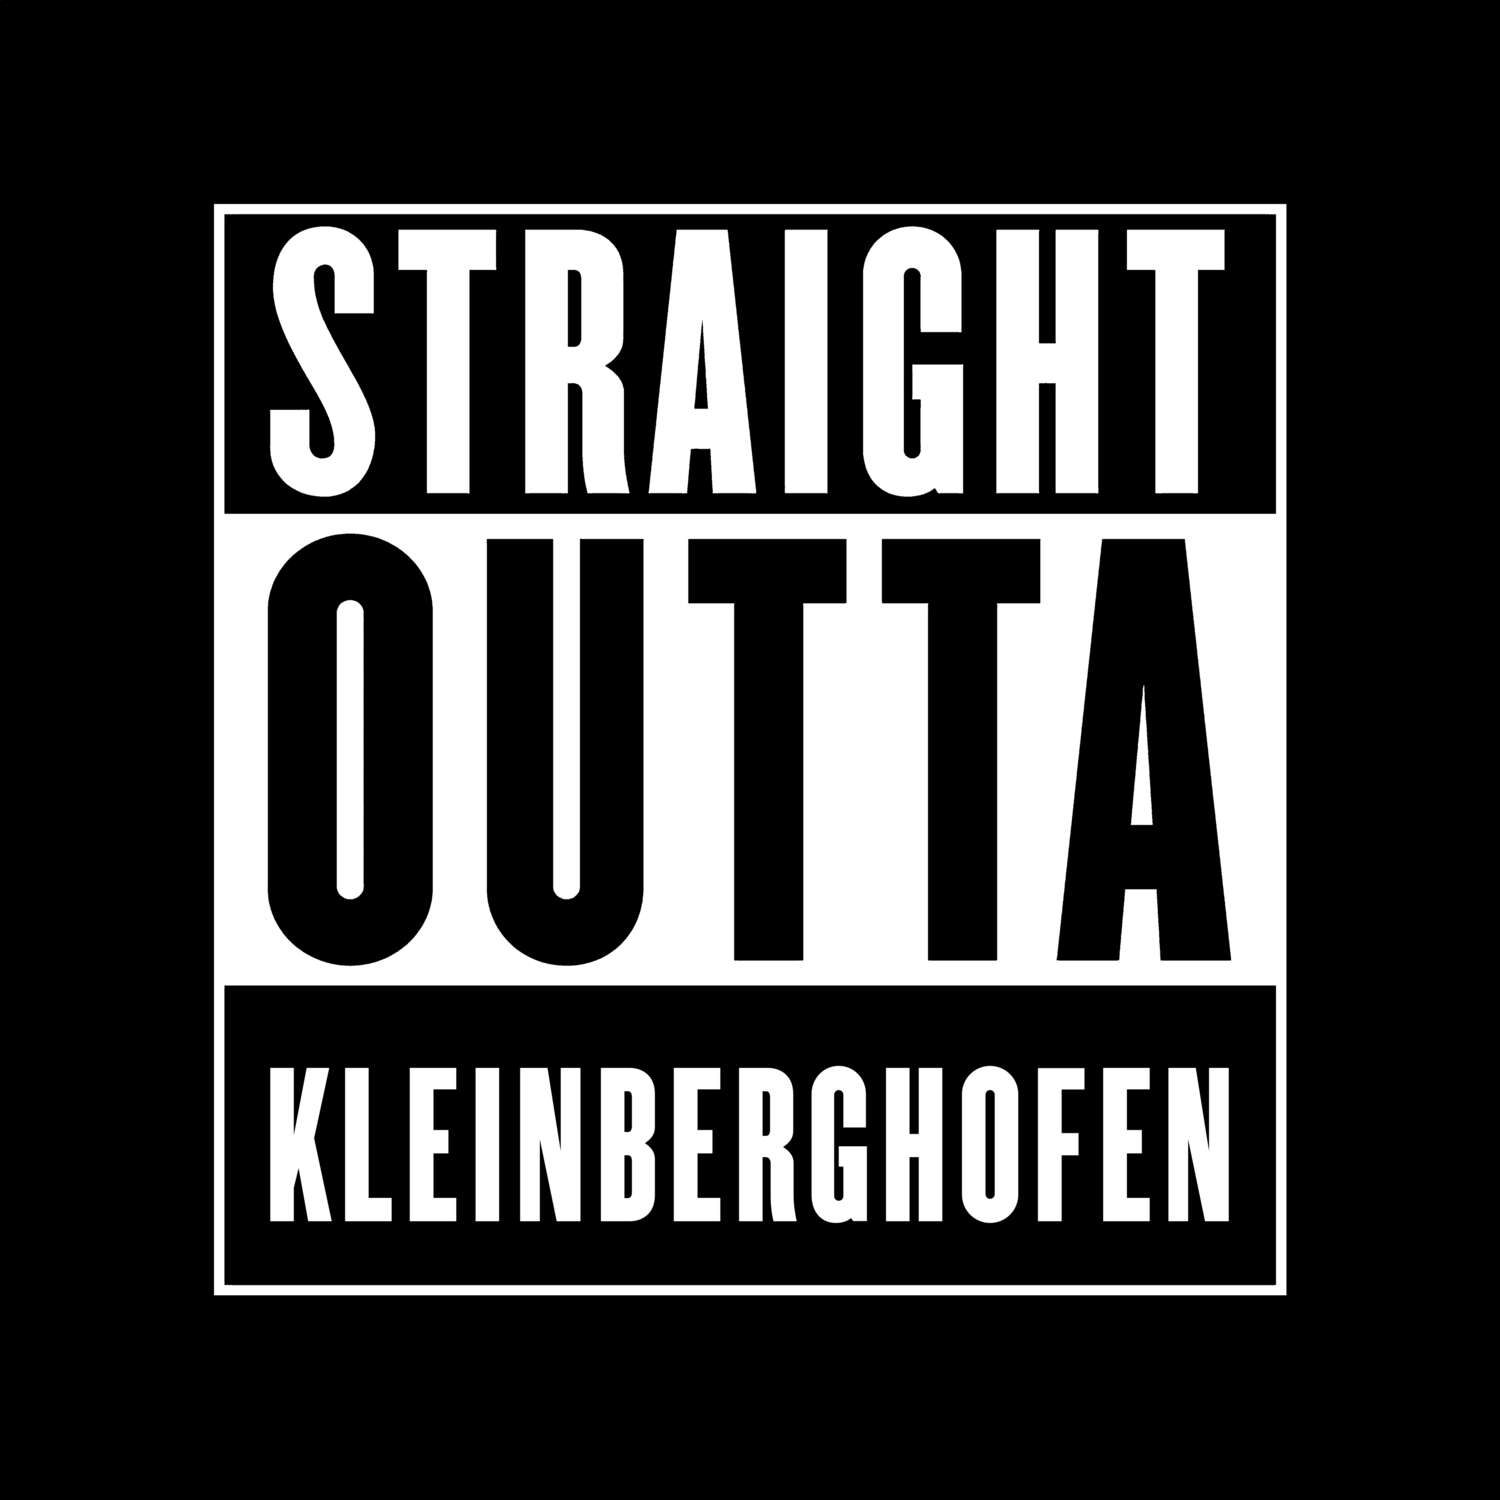 Kleinberghofen T-Shirt »Straight Outta«